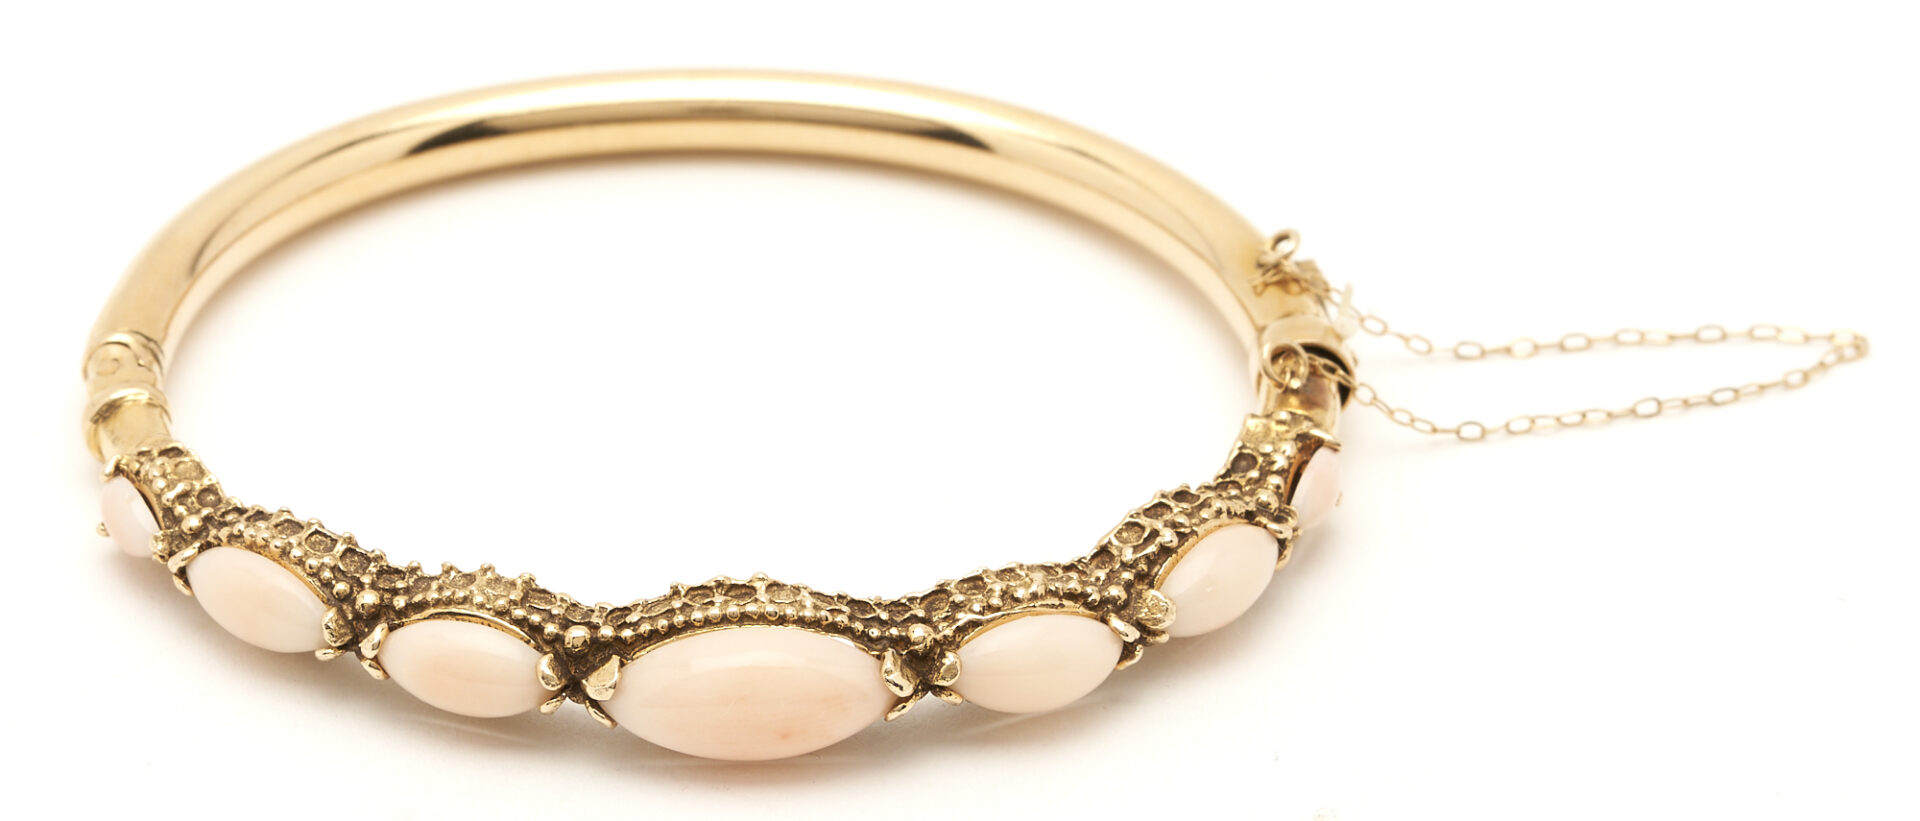 Lot 415: 14K Pink Opal Bangle Bracelet